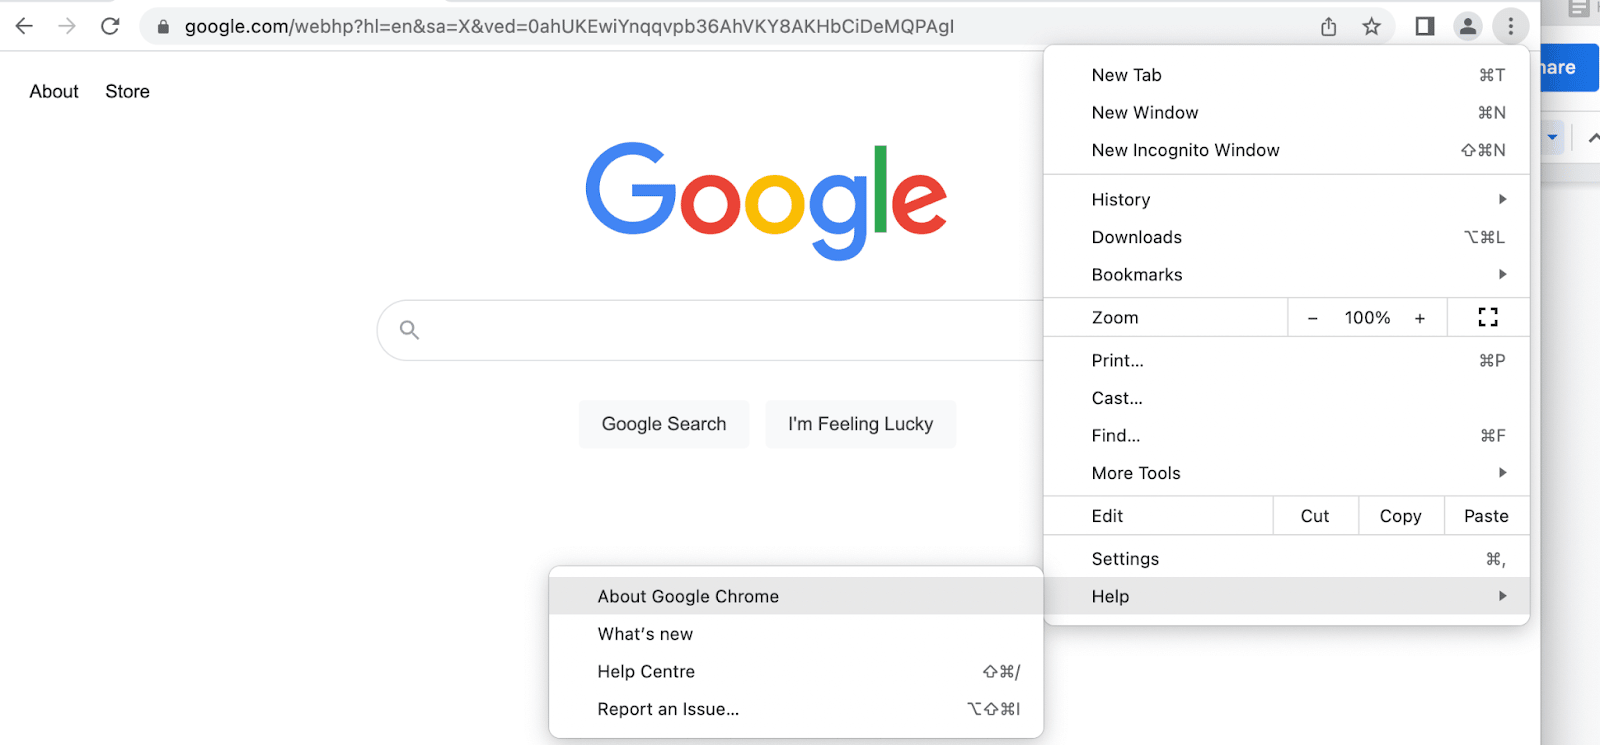 Google Chromeが最新の状態であるかを確認